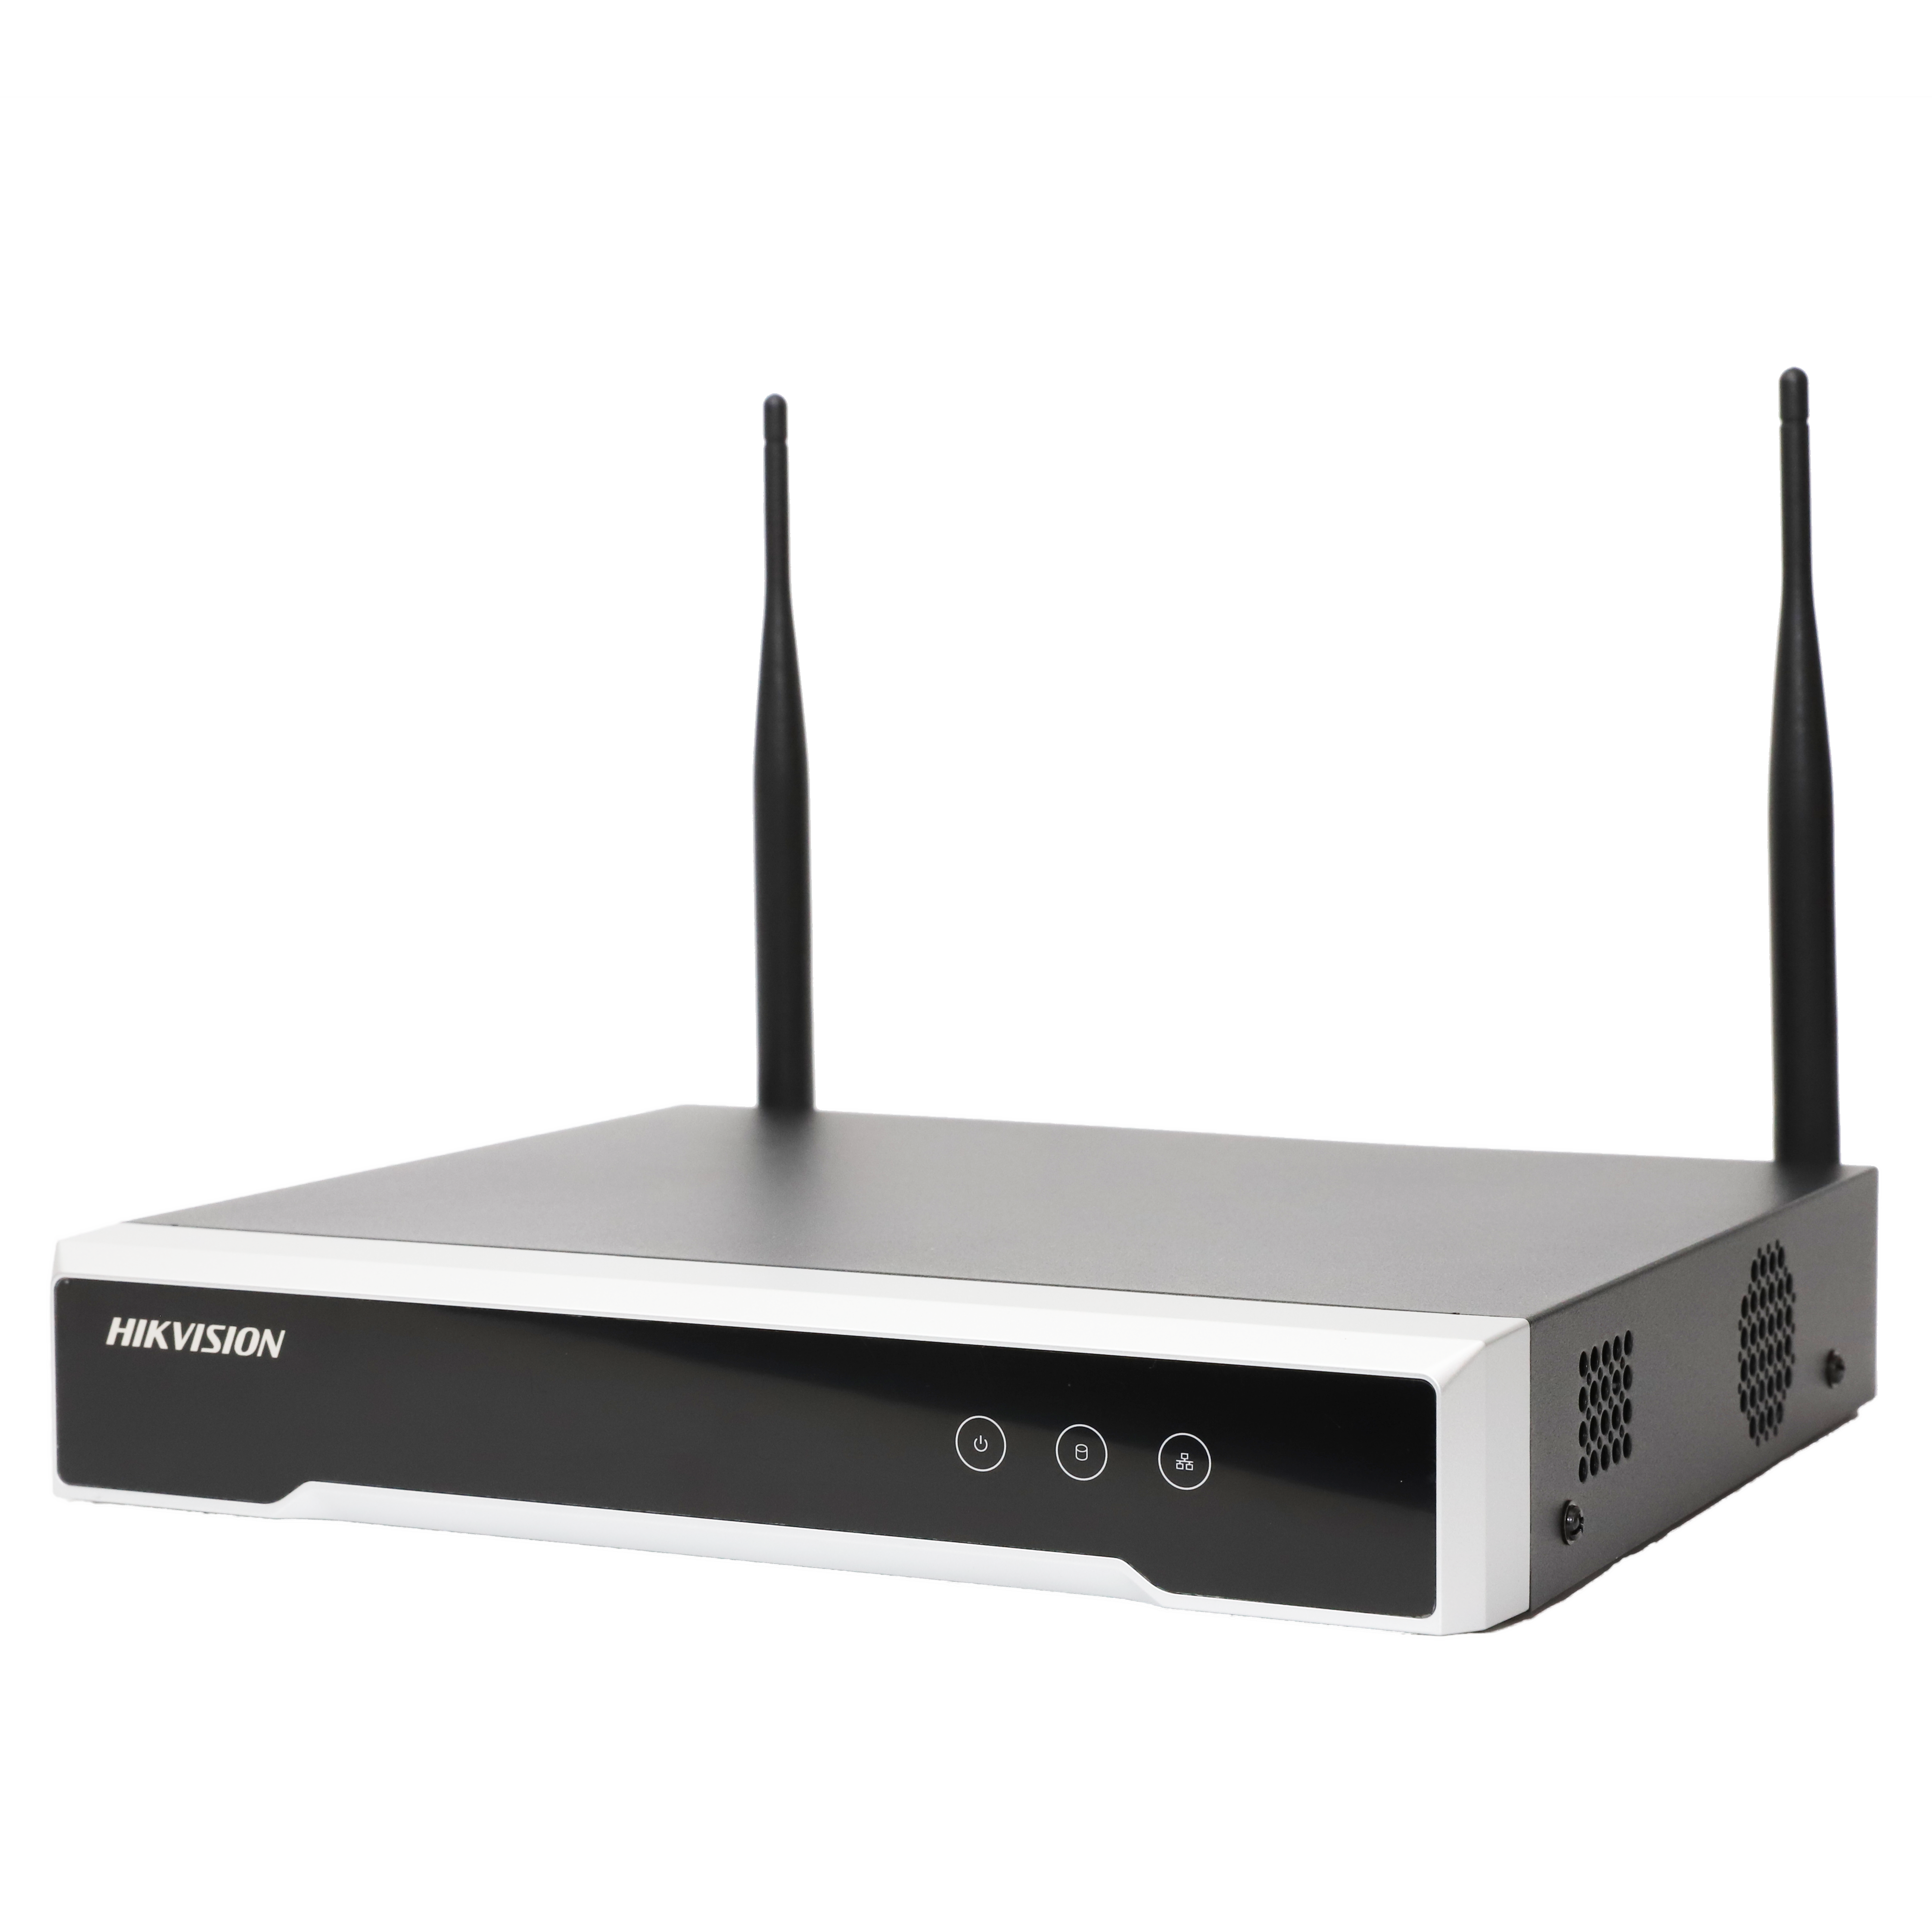 Bộ Kit Camera IP Wifi HIKVISION NK42W0H(D) (Bao gồm 1 đầu ghi Wifi 4 kênh + 4 camera 2MP)